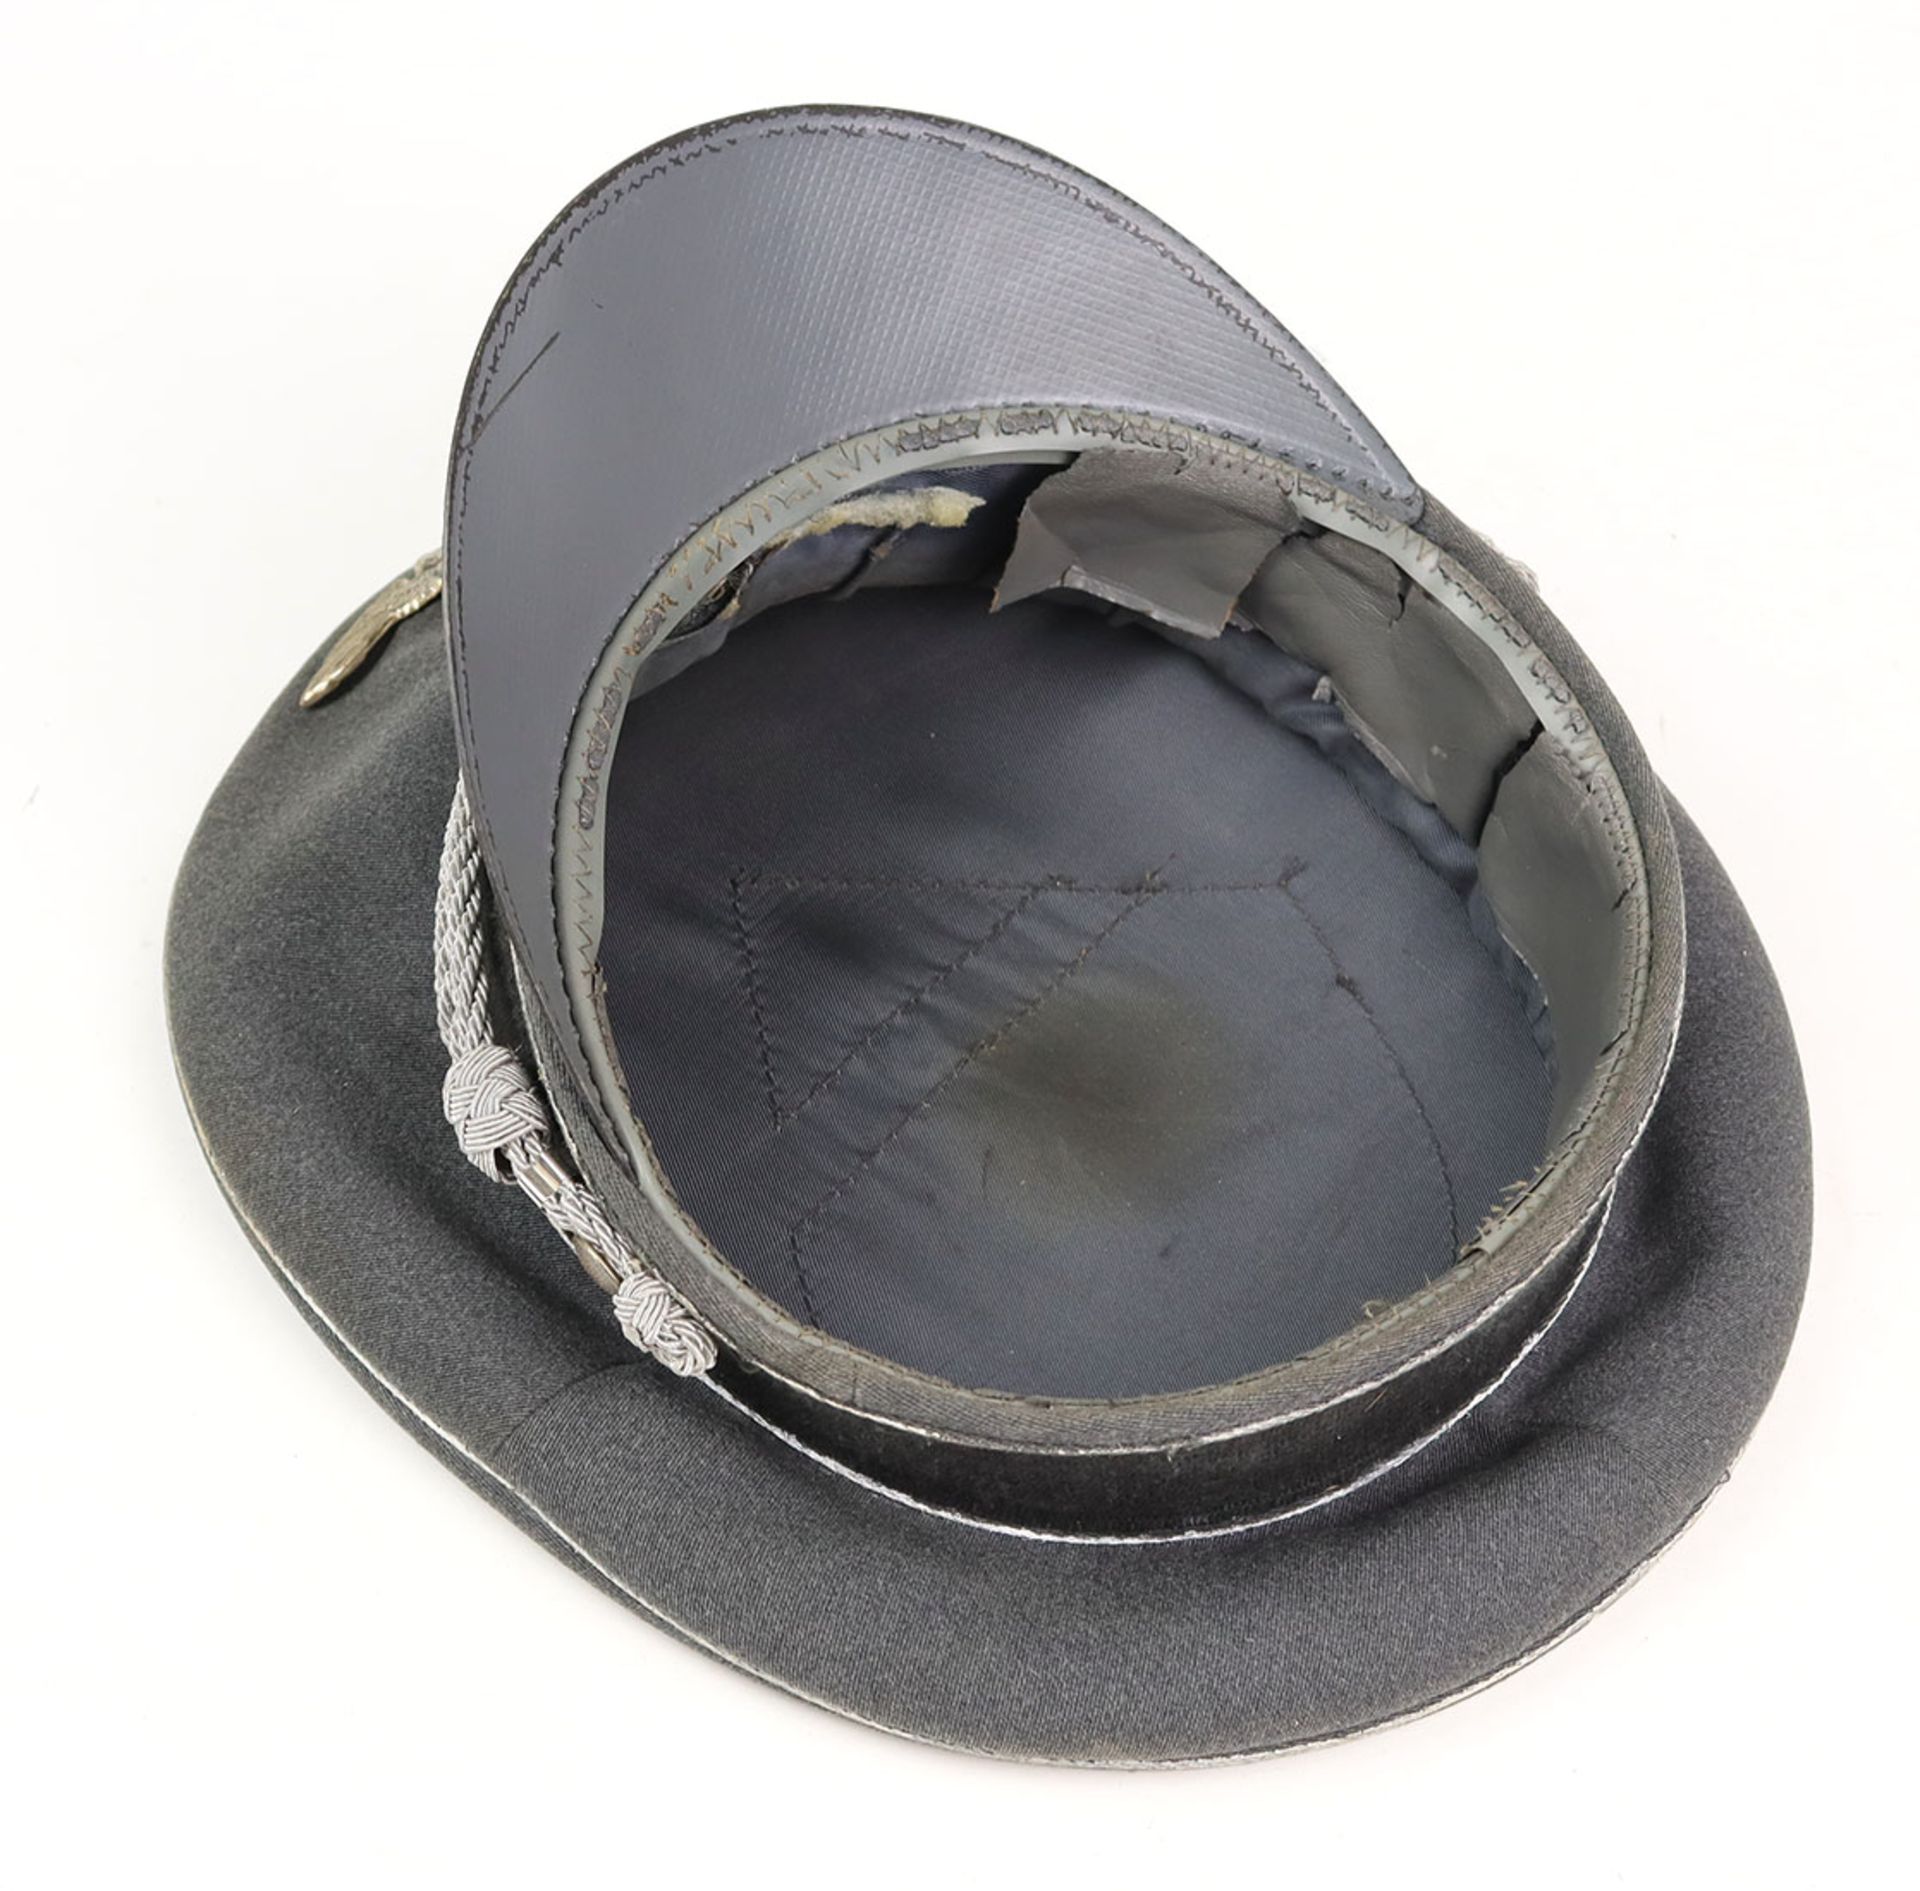 Schirmmützeaus grauem Tuch mit wei gefasster schwarzer Paspellierung, schwarzem Mützenband u. - Image 3 of 3